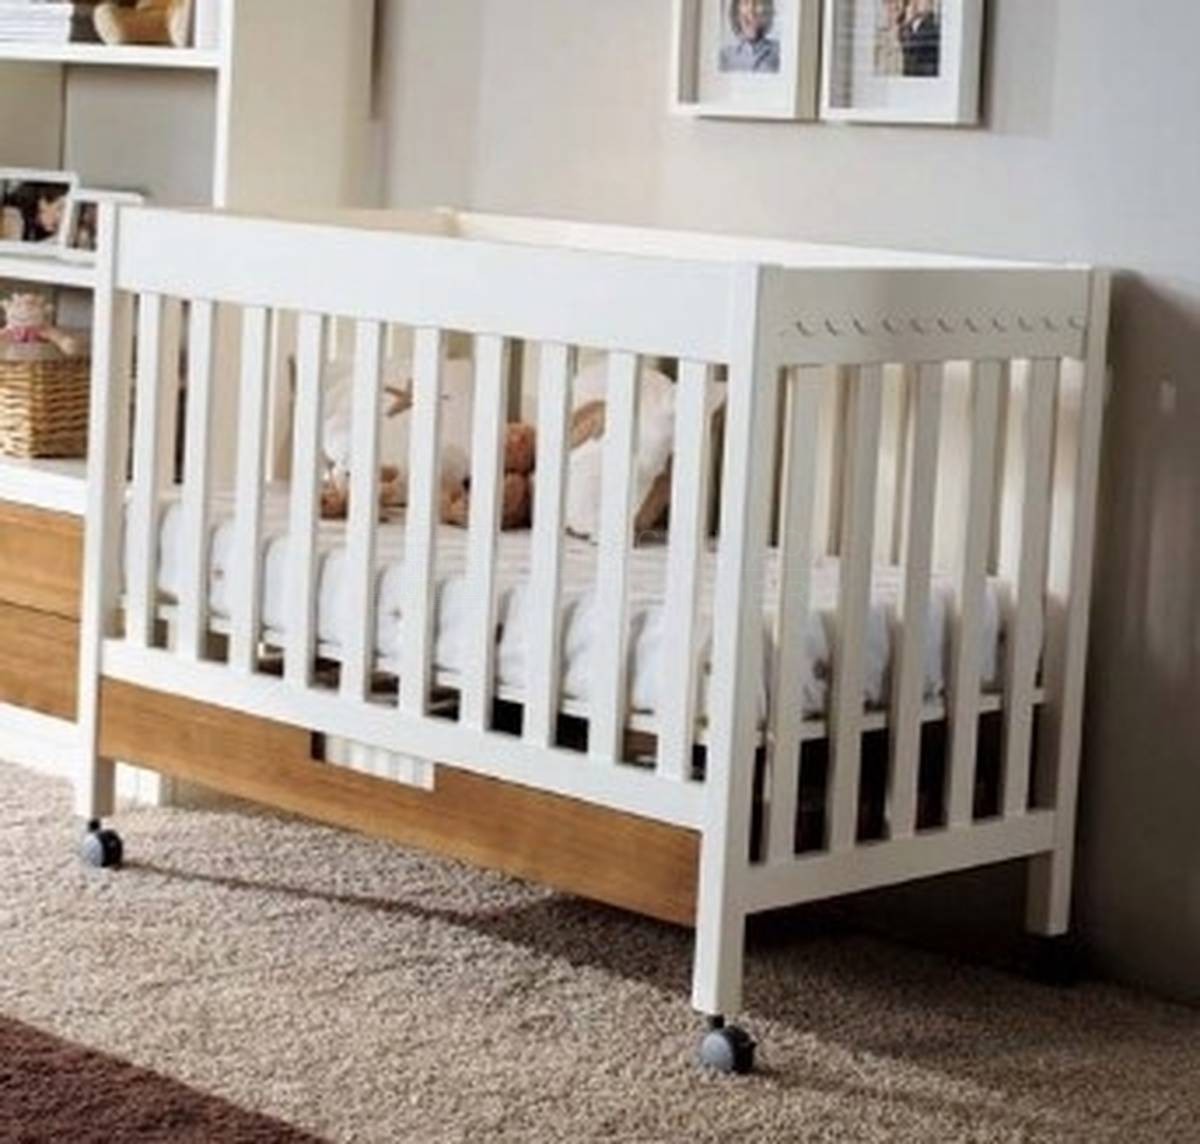 Кроватка для новорожденного Juvenil small из Испании фабрики MUGALI